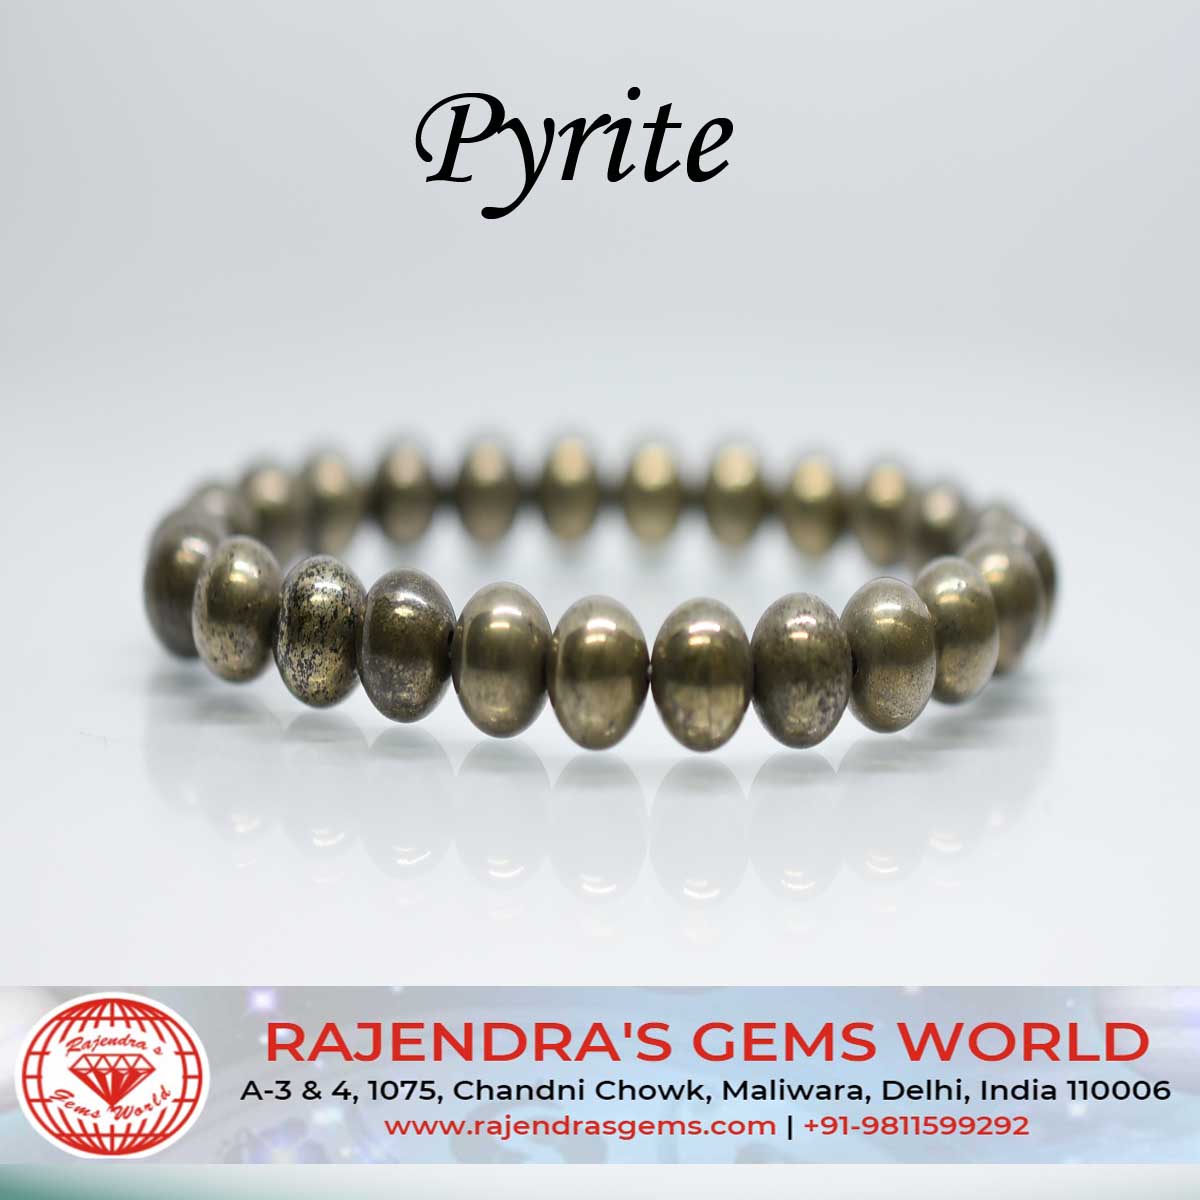 bracelet femme pyrite pierre naturelle pampille or création fait main  1bracelet TOUR DE POIGNET 15 cm poignet fin